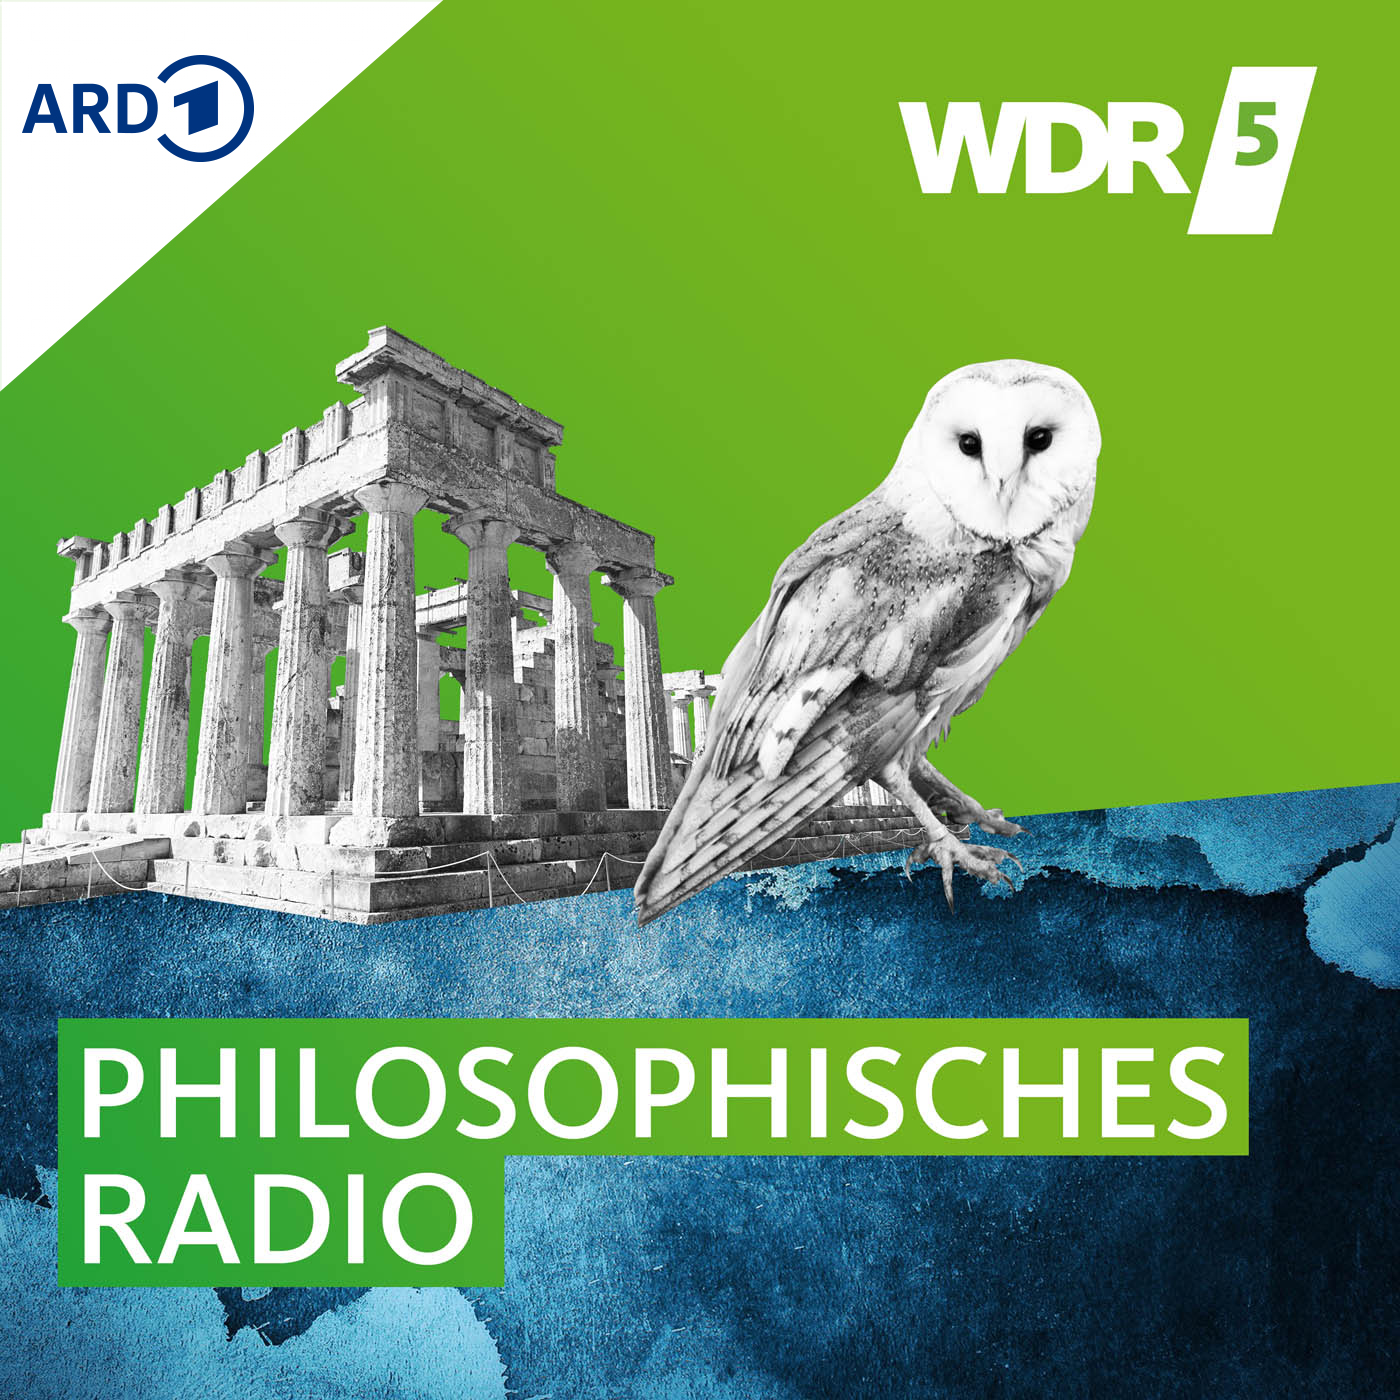 WDR 5 Das philosophische Radio: Wie gehen Sie mit Unwissenheit um? (55m)